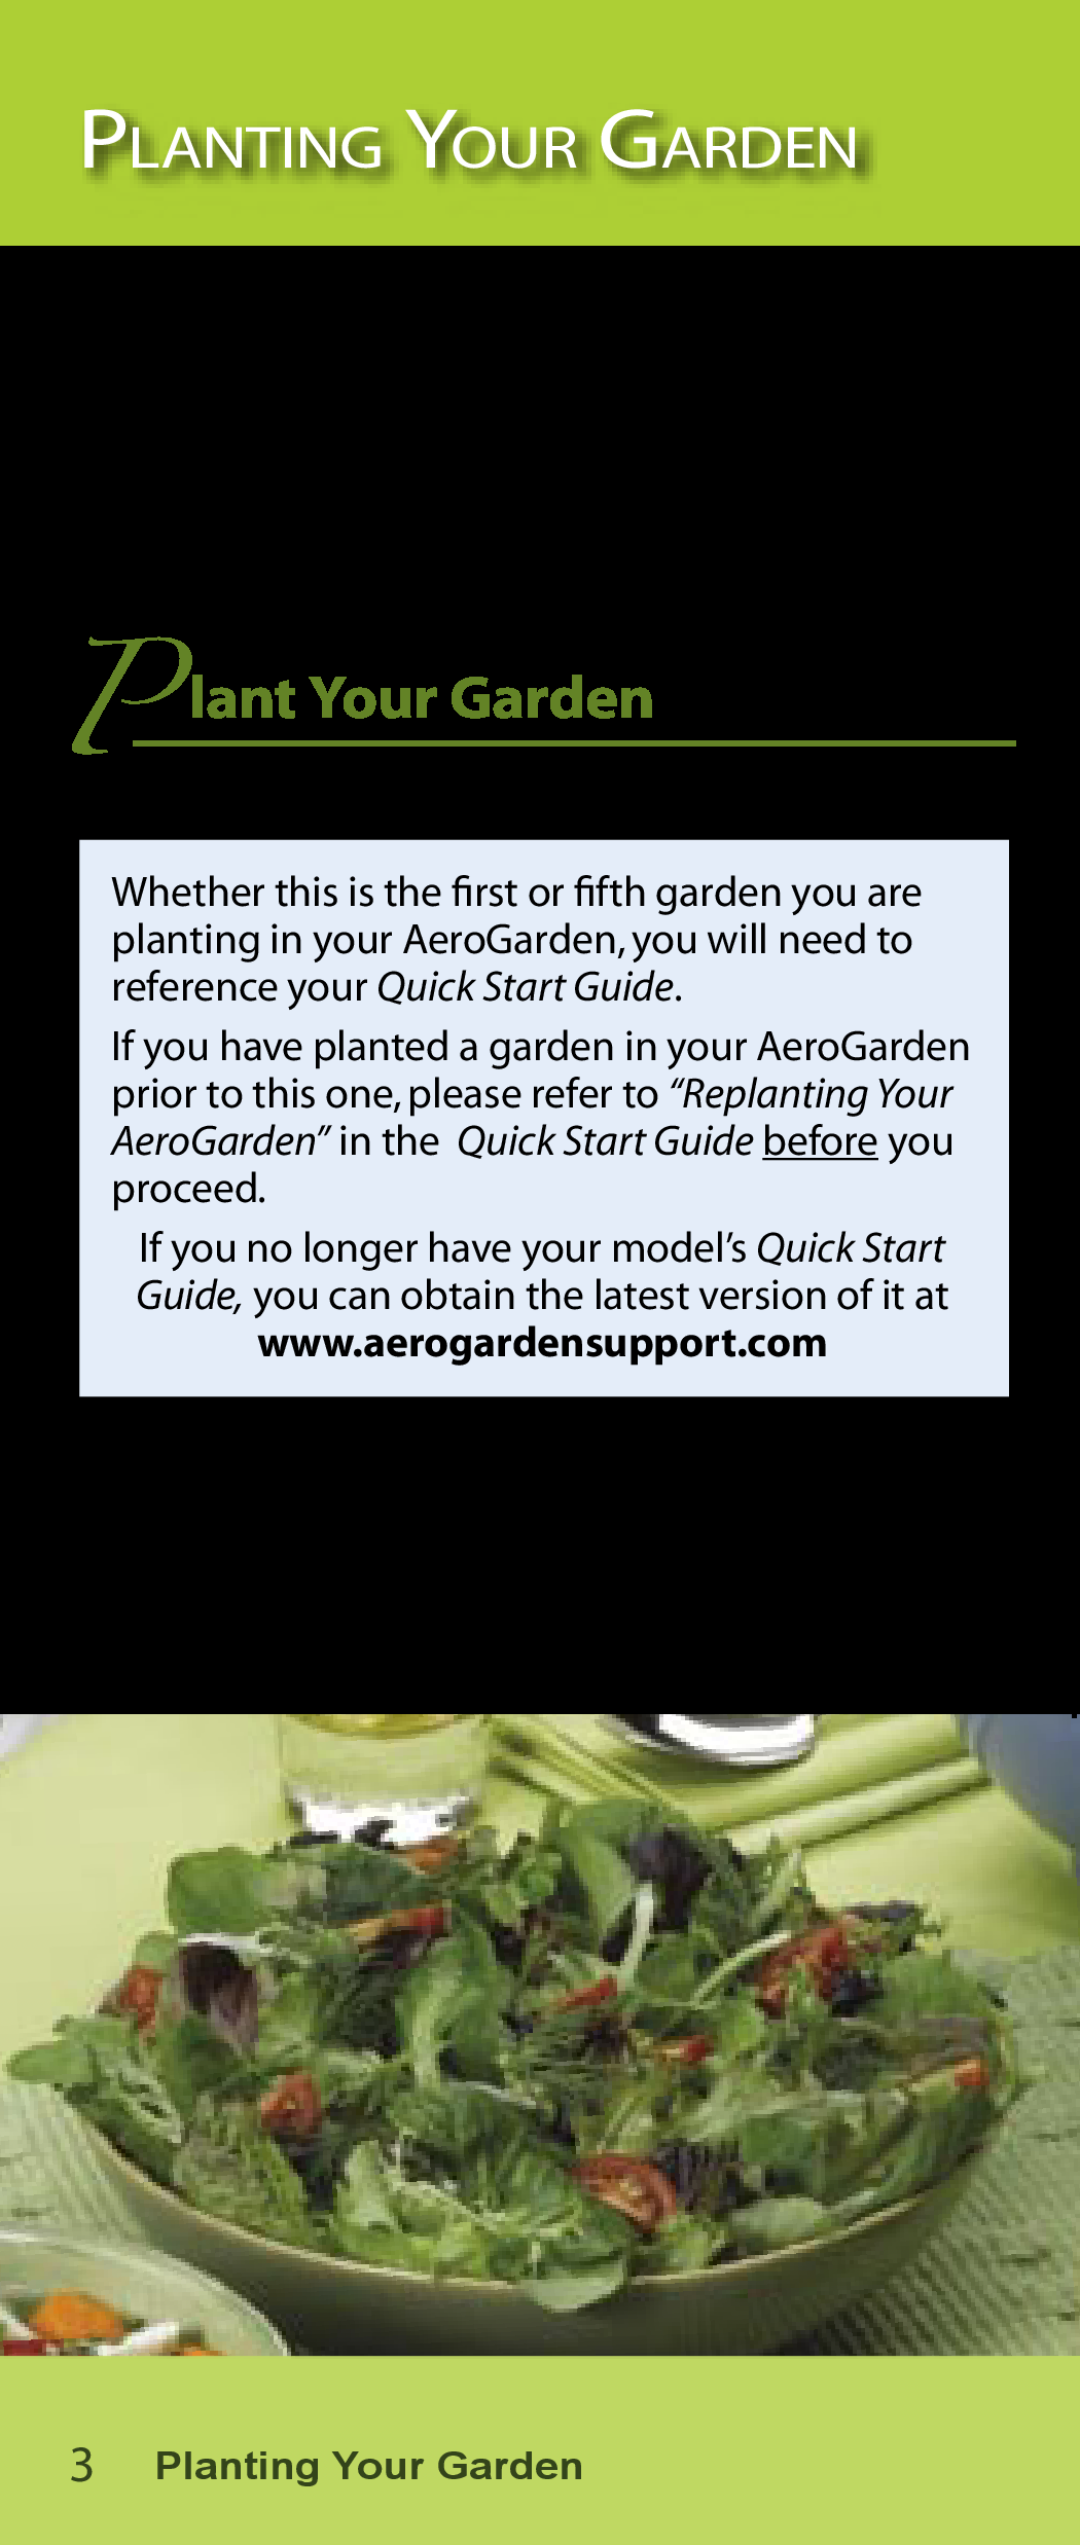 AeroGarden Salad Series manual Planting Your Garden, P lant Your Garden 